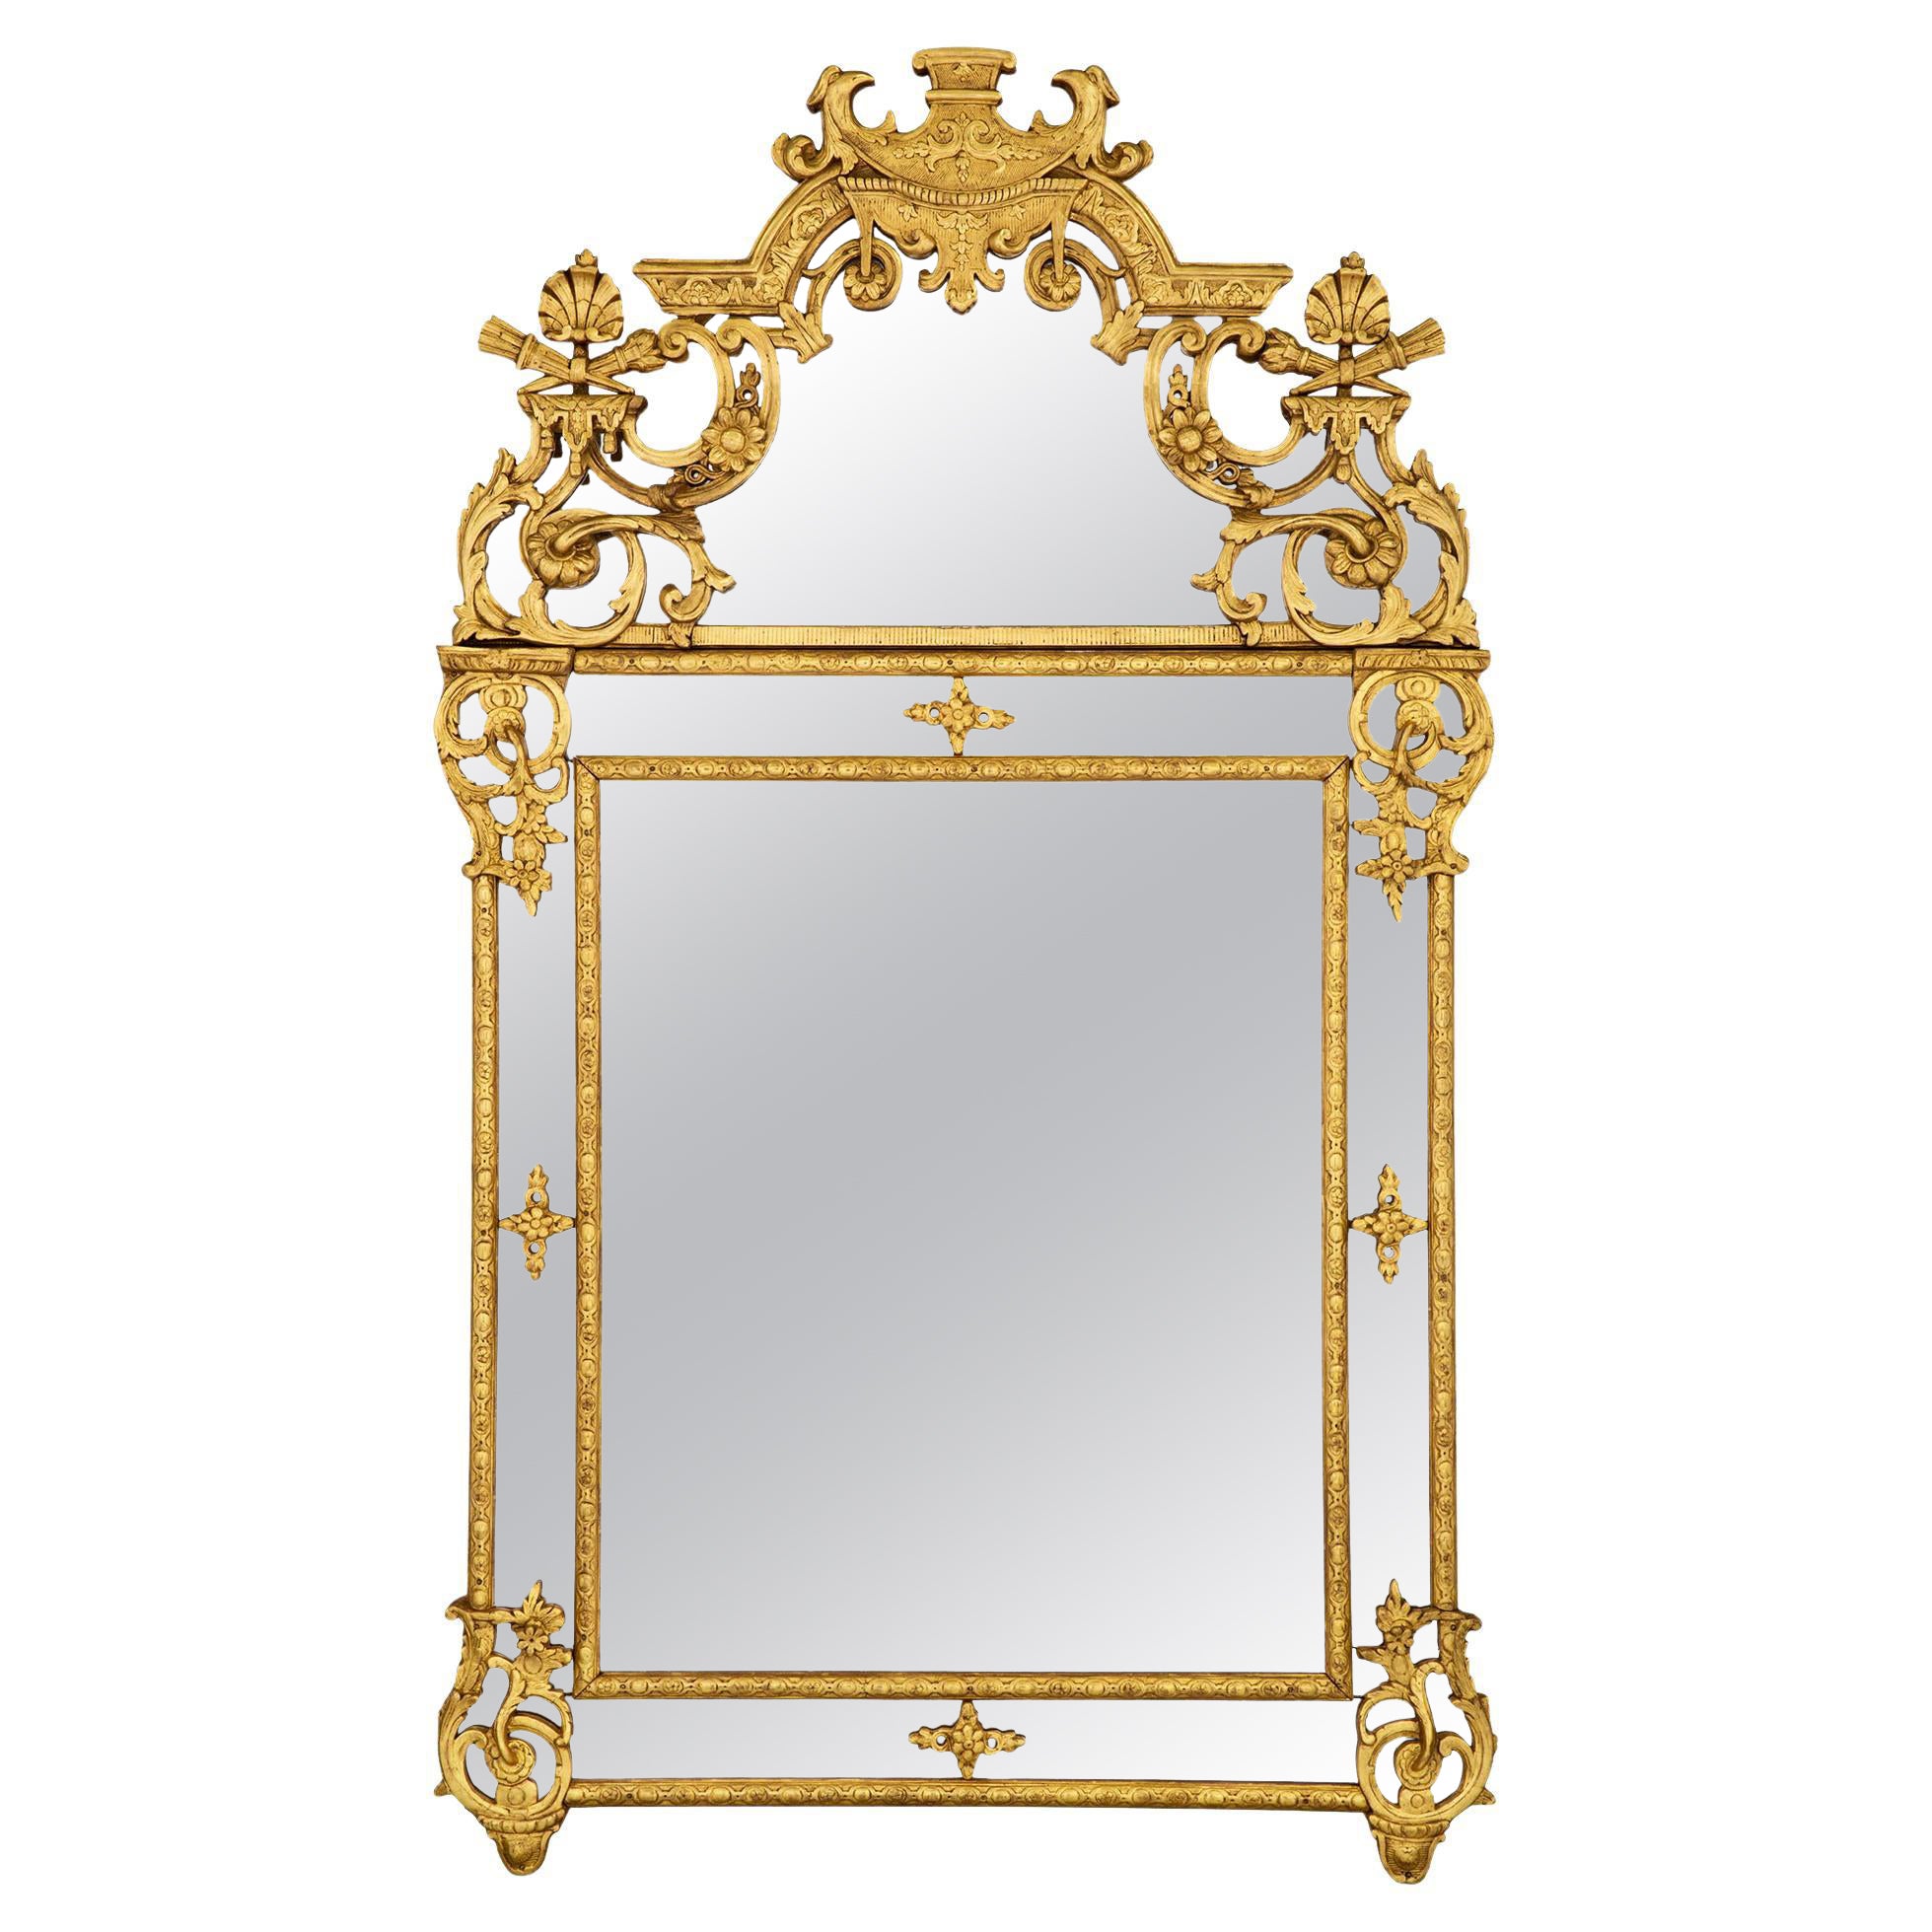 Miroir en bois doré à double cadre de la période Régence du XVIIIe siècle français